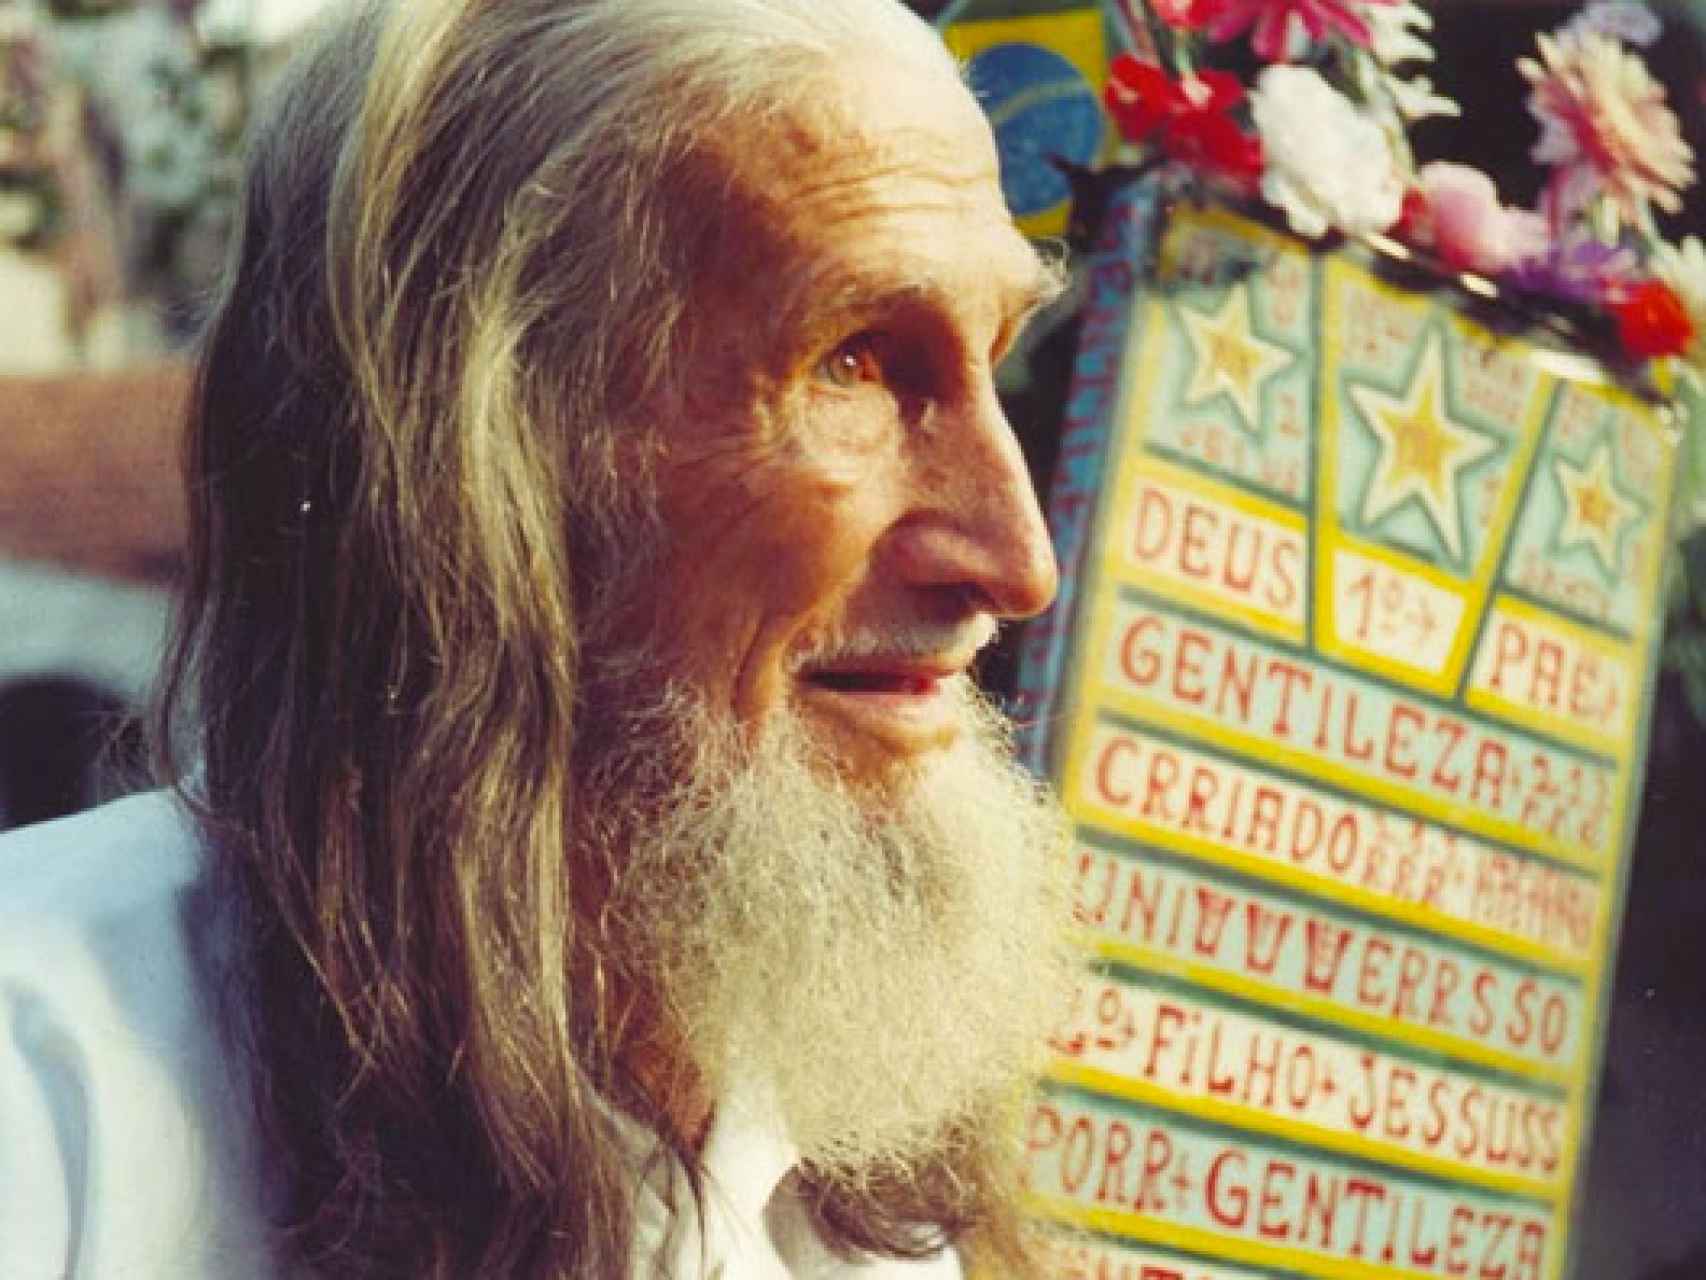 El Profeta Gentileza se convirtió en un icono aún mayor tras su muerte, en 1996.